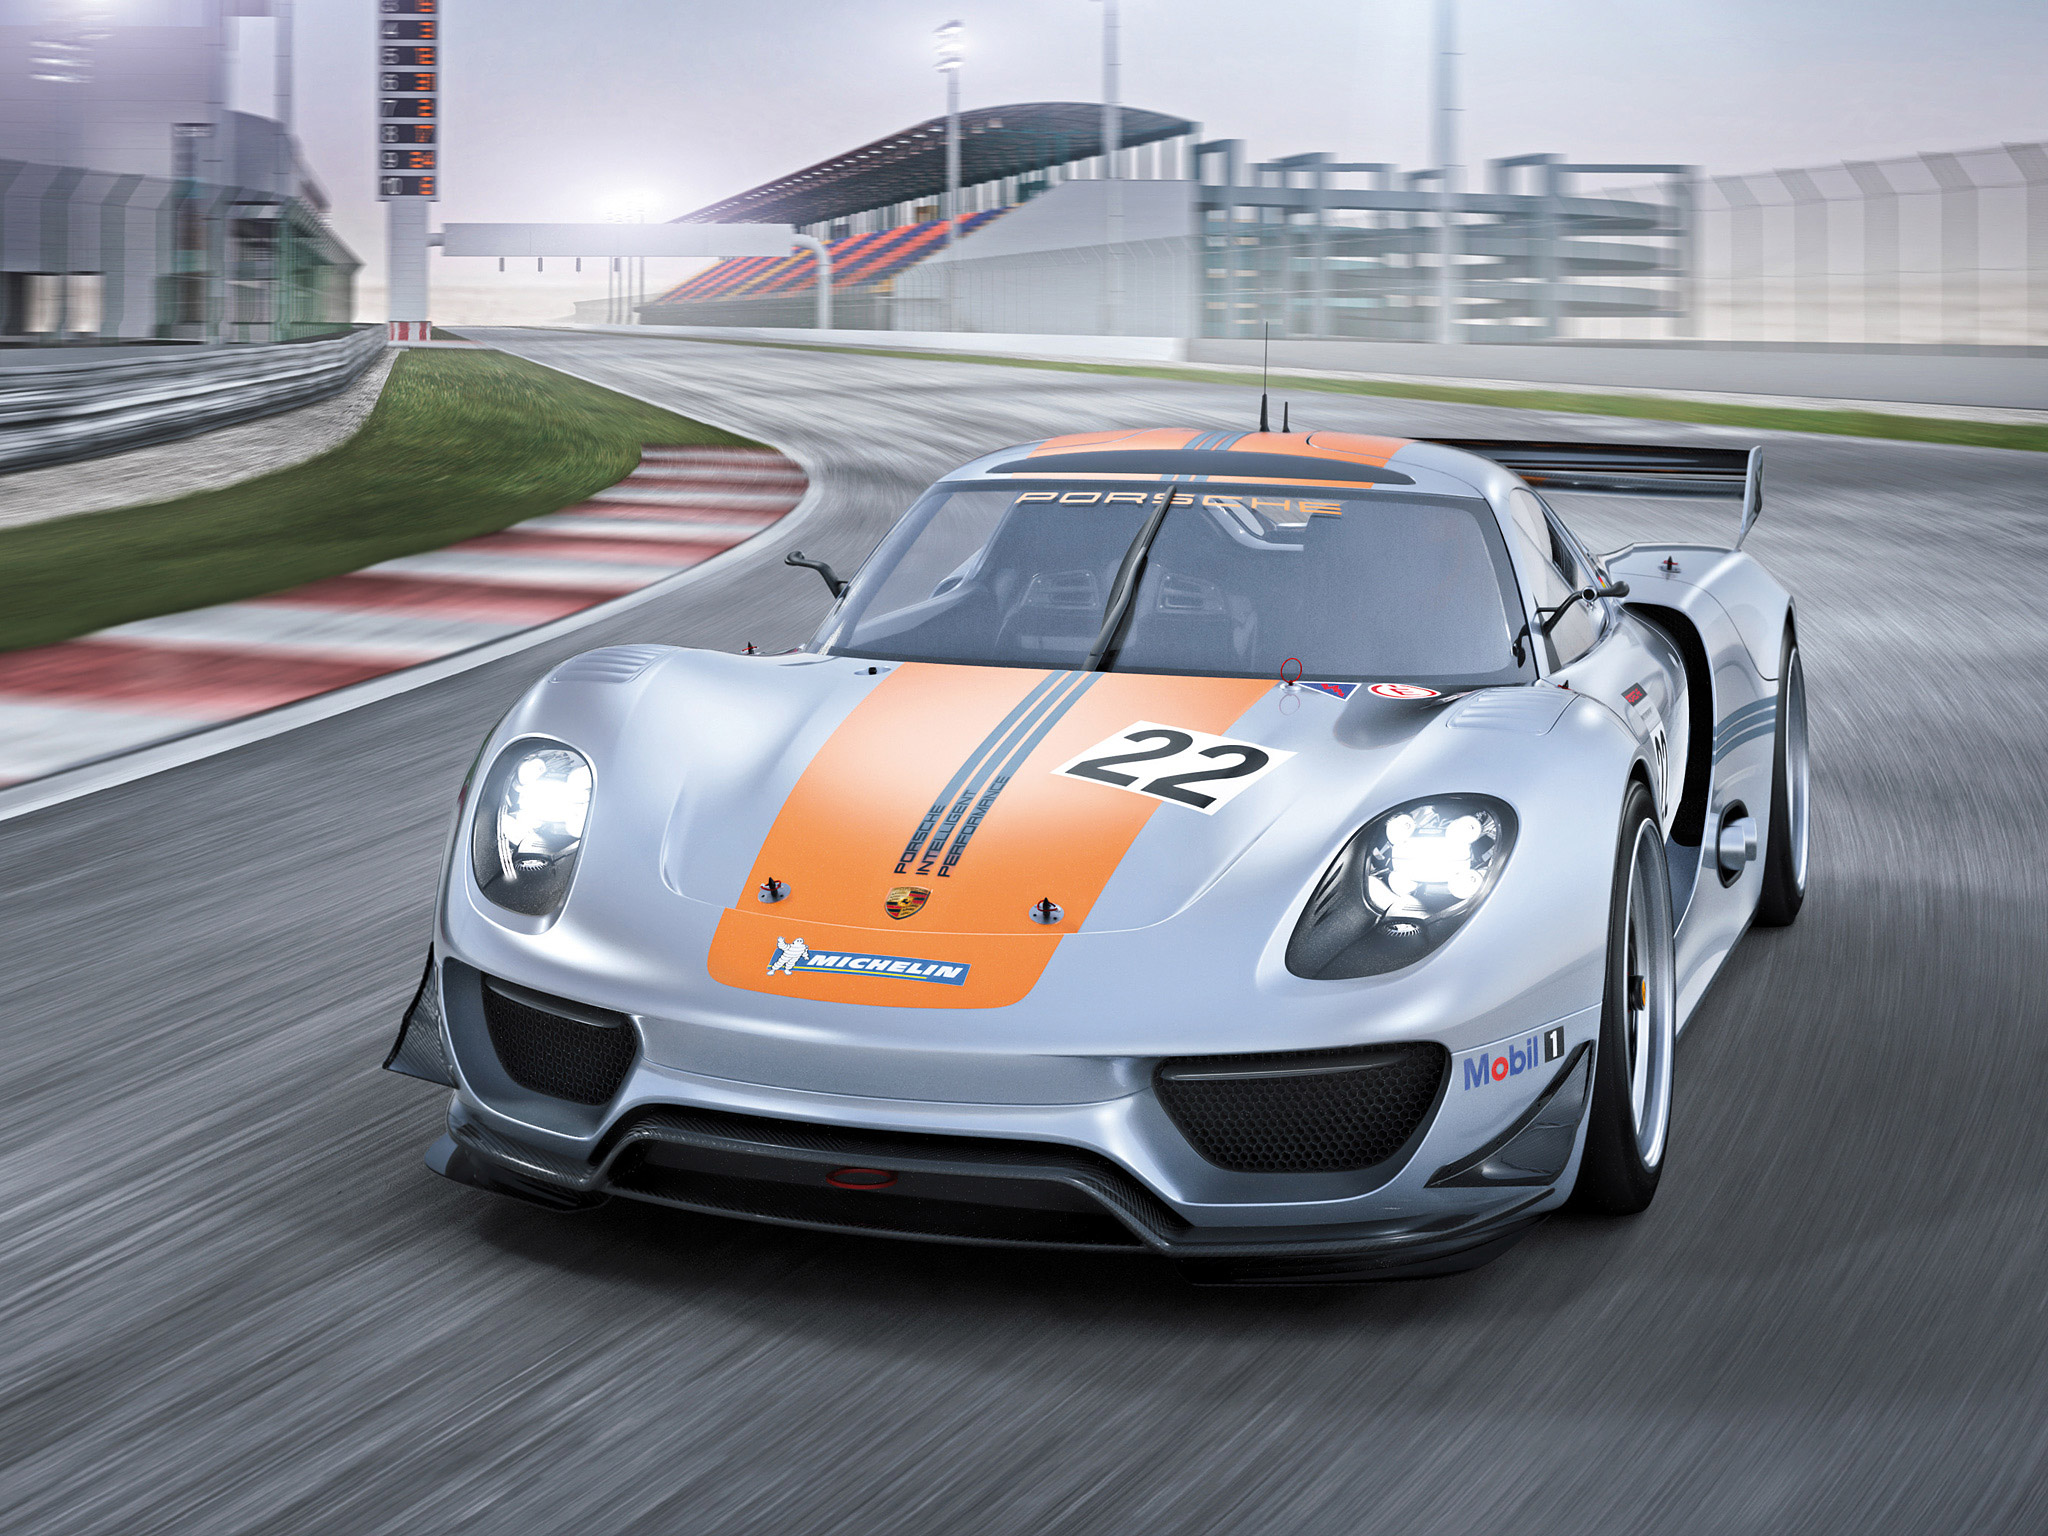 Скачать обои Концепт Porsche 918 Rsr на телефон бесплатно